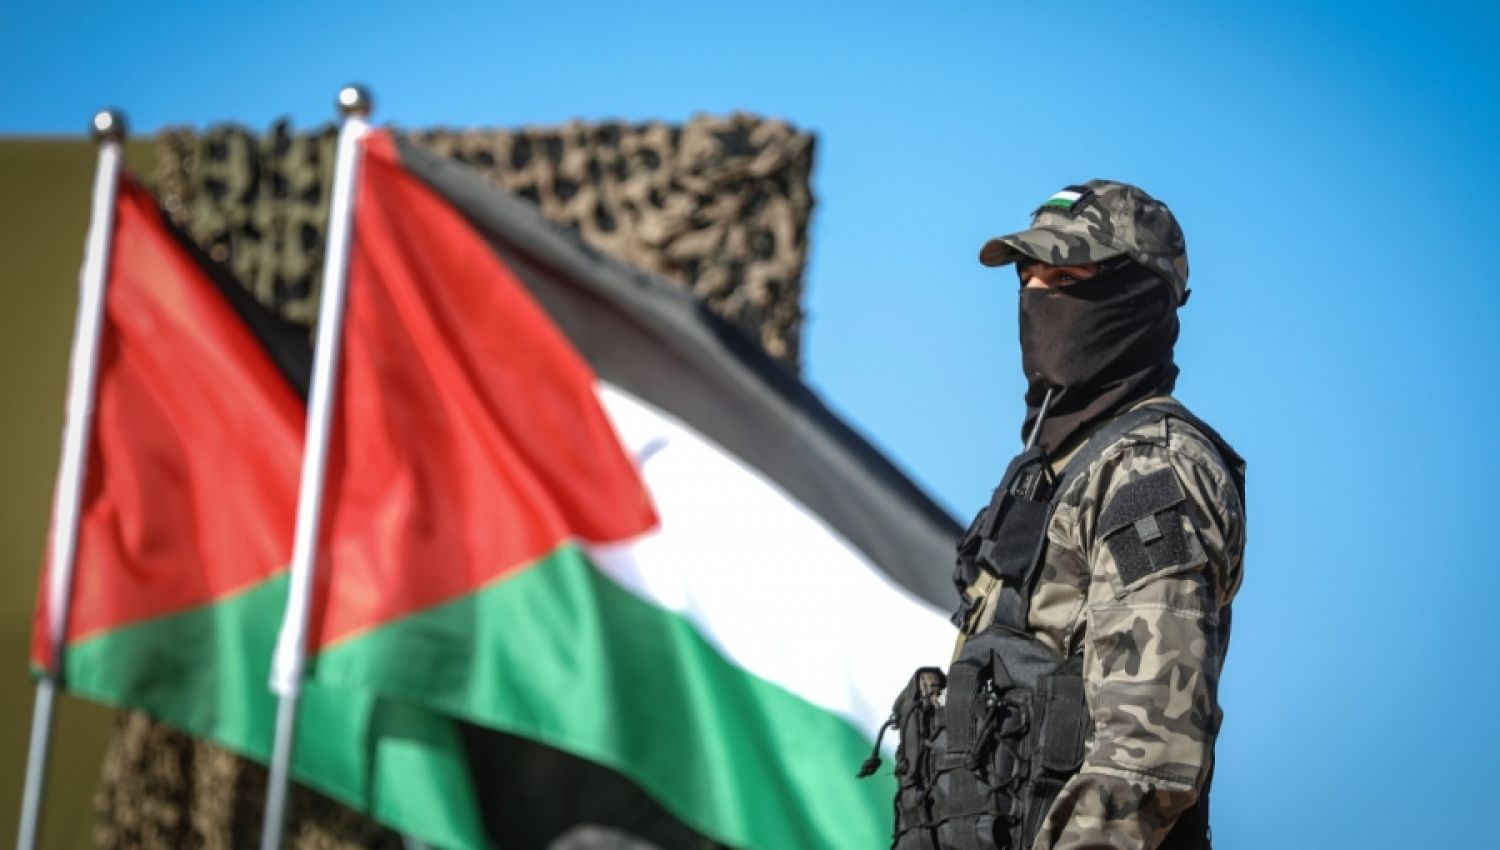 المقاومة الفلسطينيّة تدعو إلى الضغط على الكيان لفتح الحصار ووقف المعاناة الإنسانيّة